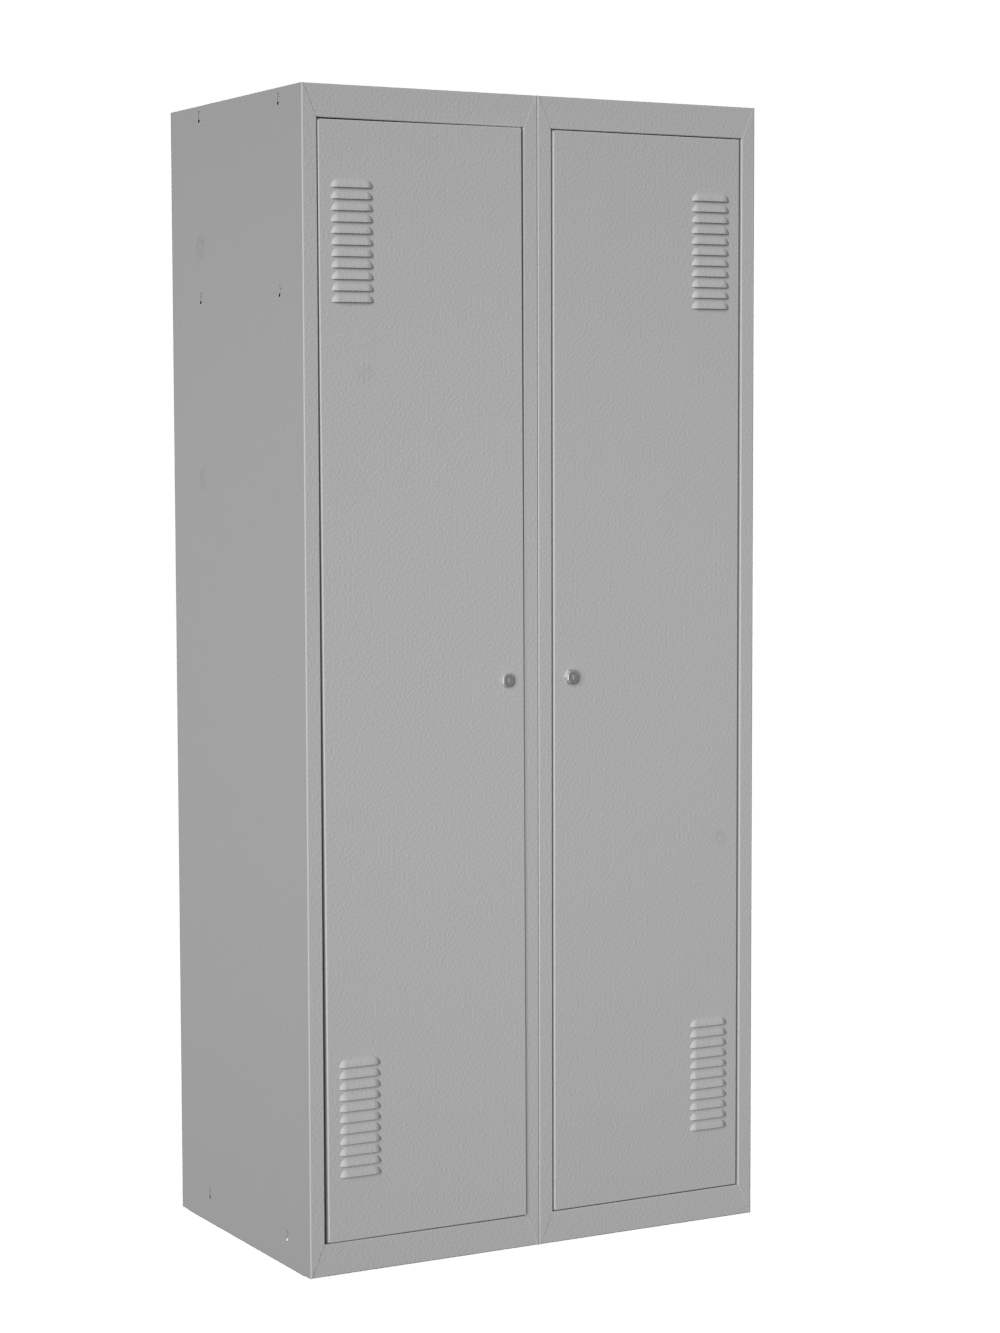 Шкаф удваивает. Шкаф для одежды Тисса 800х500х1800мм цвет серый шо-2c/800. Шкаф одежный 800*500*1800 шо.001. Двойной шкаф. Шкафчик металлический двойной.